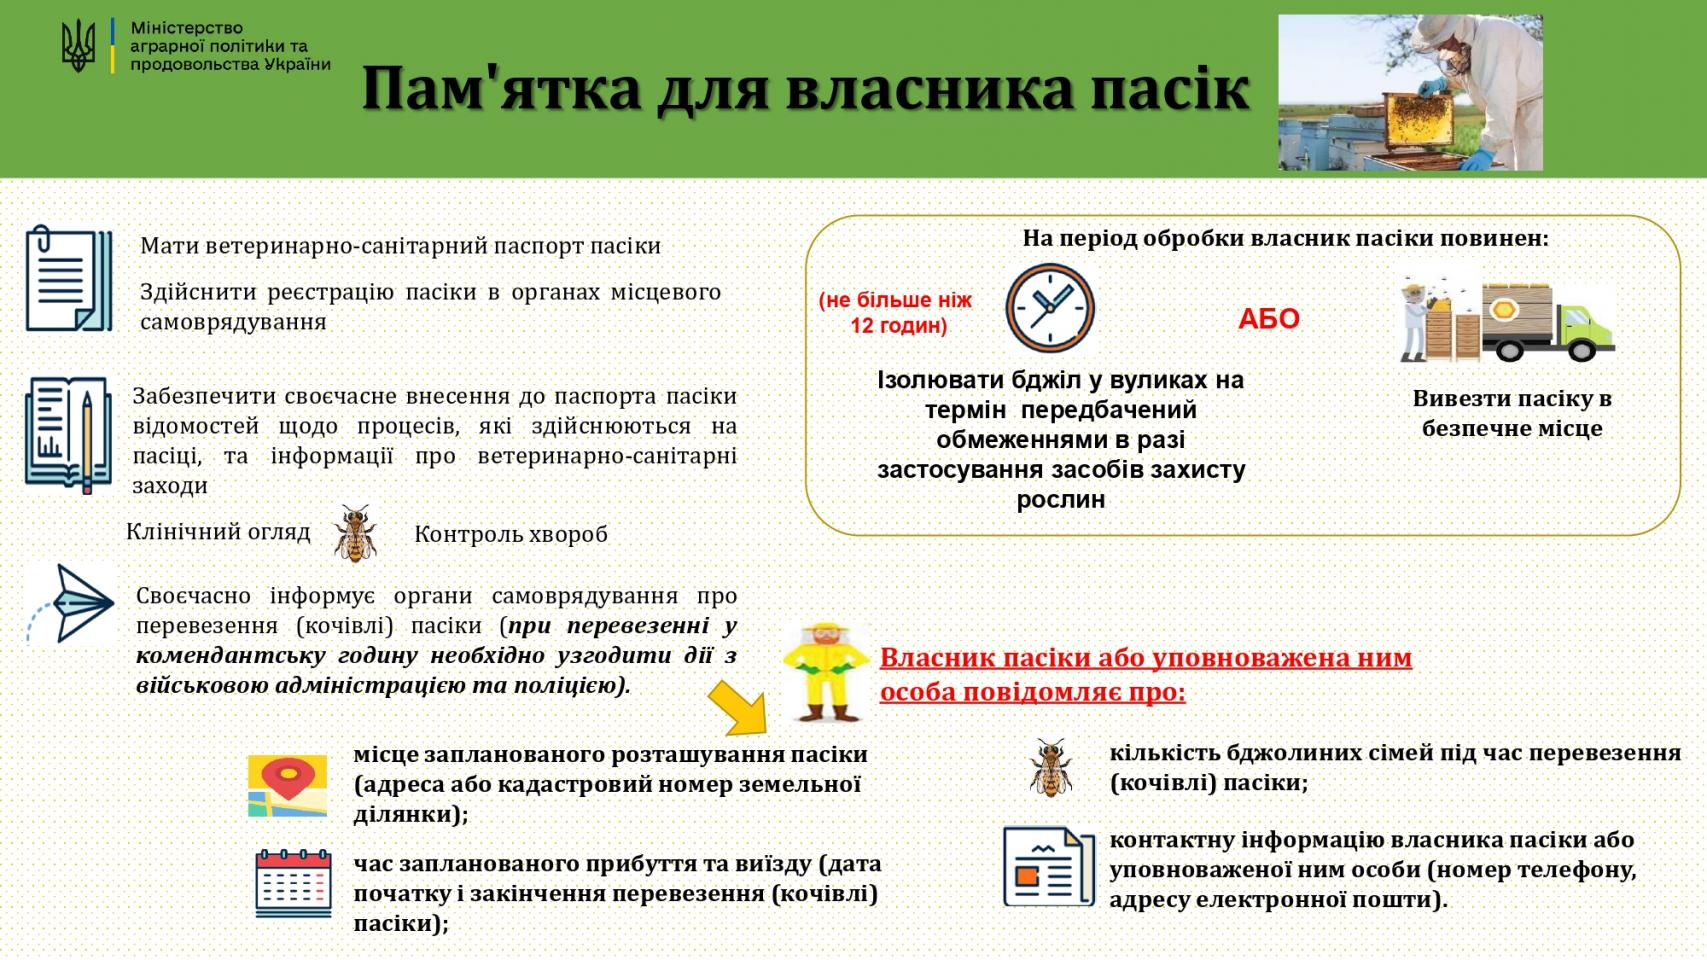 http://dunrada.gov.ua/uploadfile/archive_news/2023/03/27/2023-03-27_2315/images/images-48818.jpg